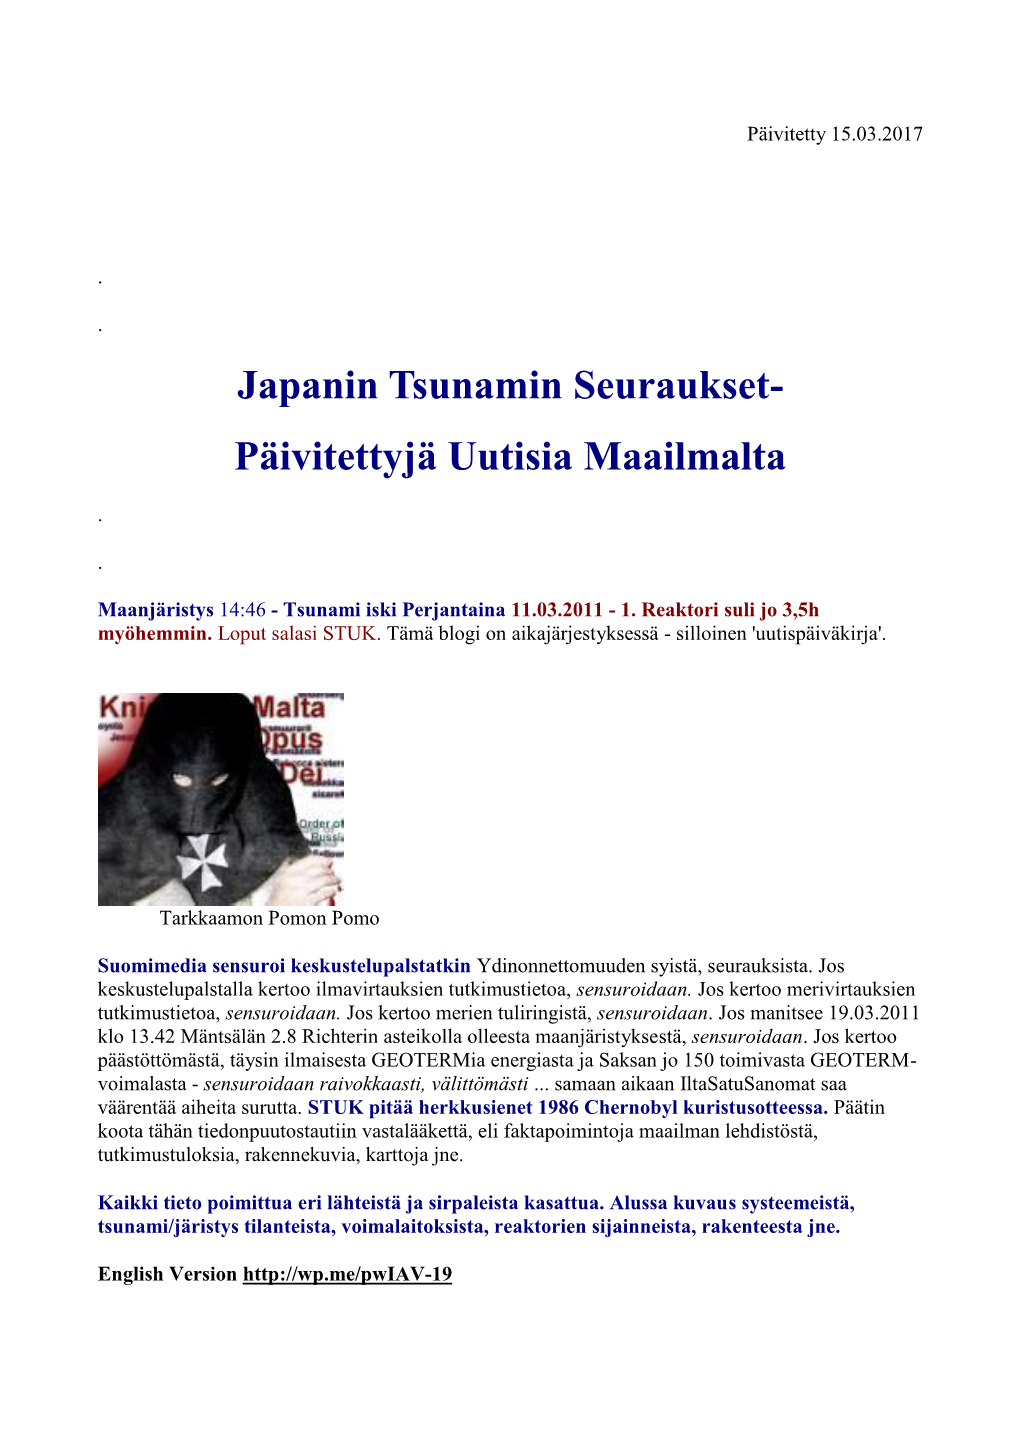 Japanin Tsunamin Seuraukset- Päivitettyjä Uutisia Maailmalta